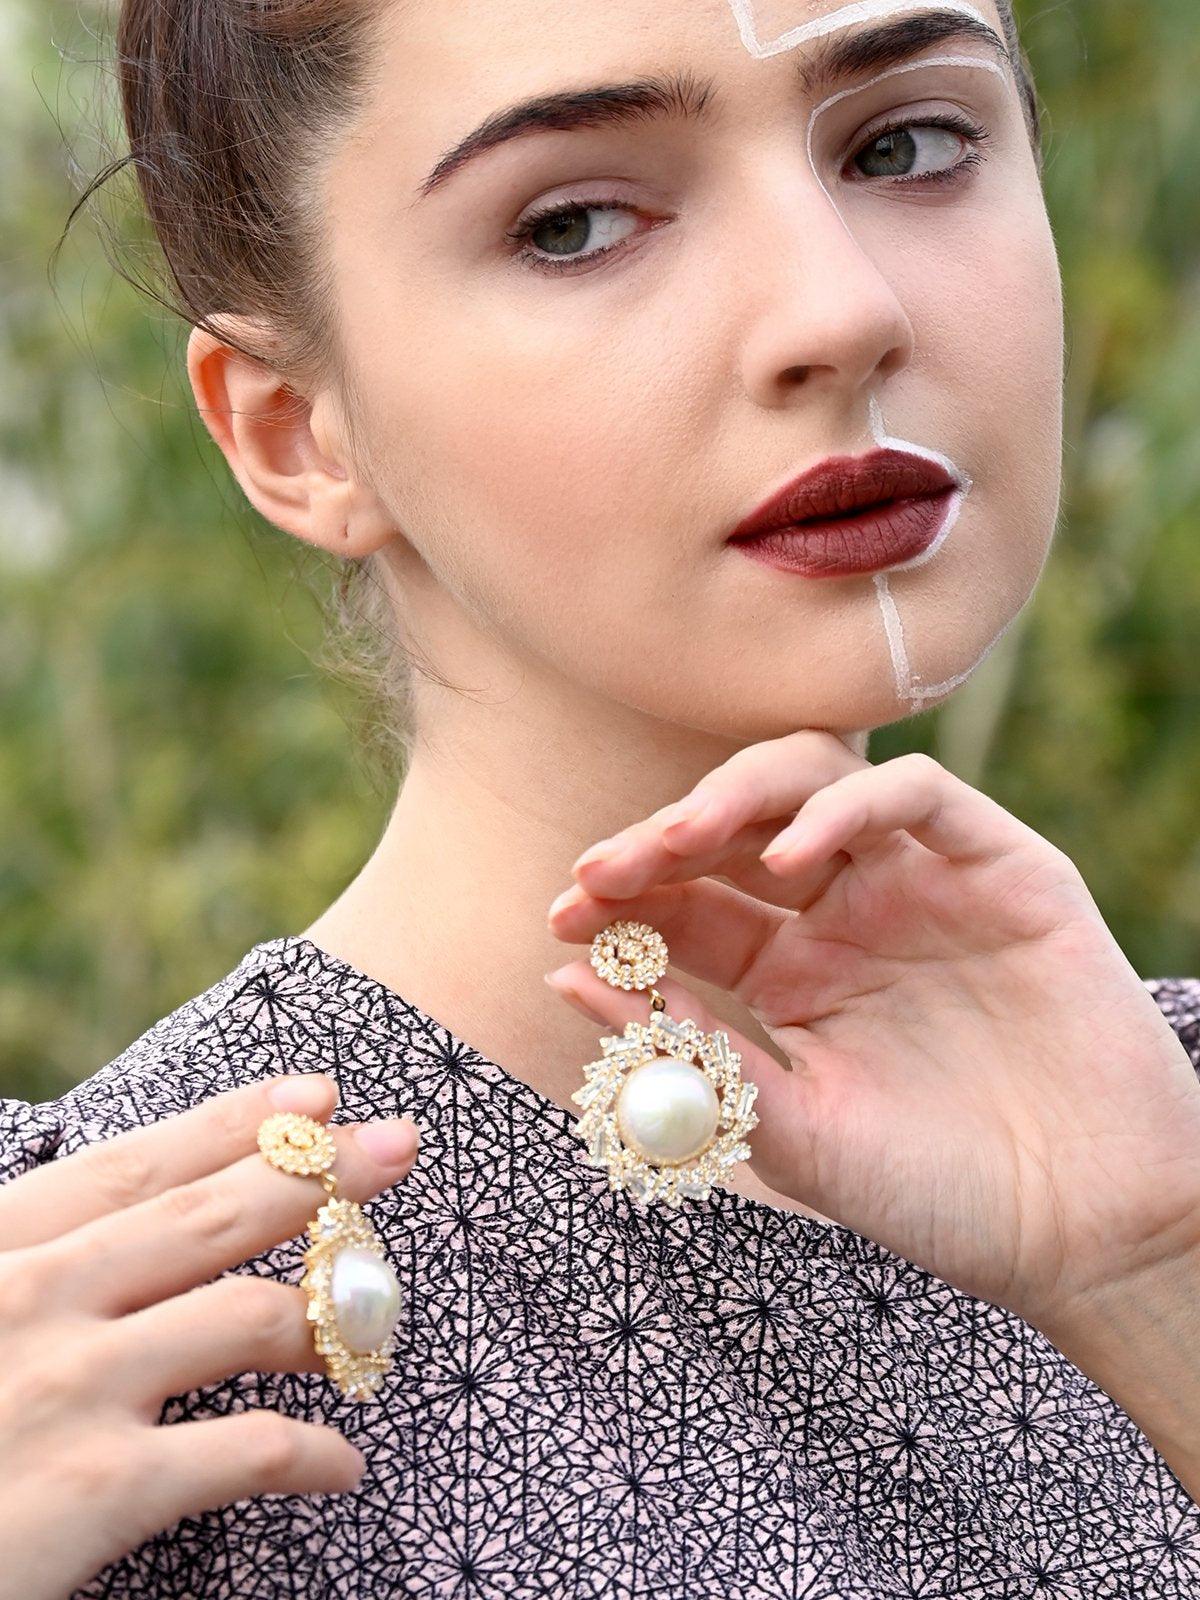 Women's Classy Gold Round Earrings - Odette